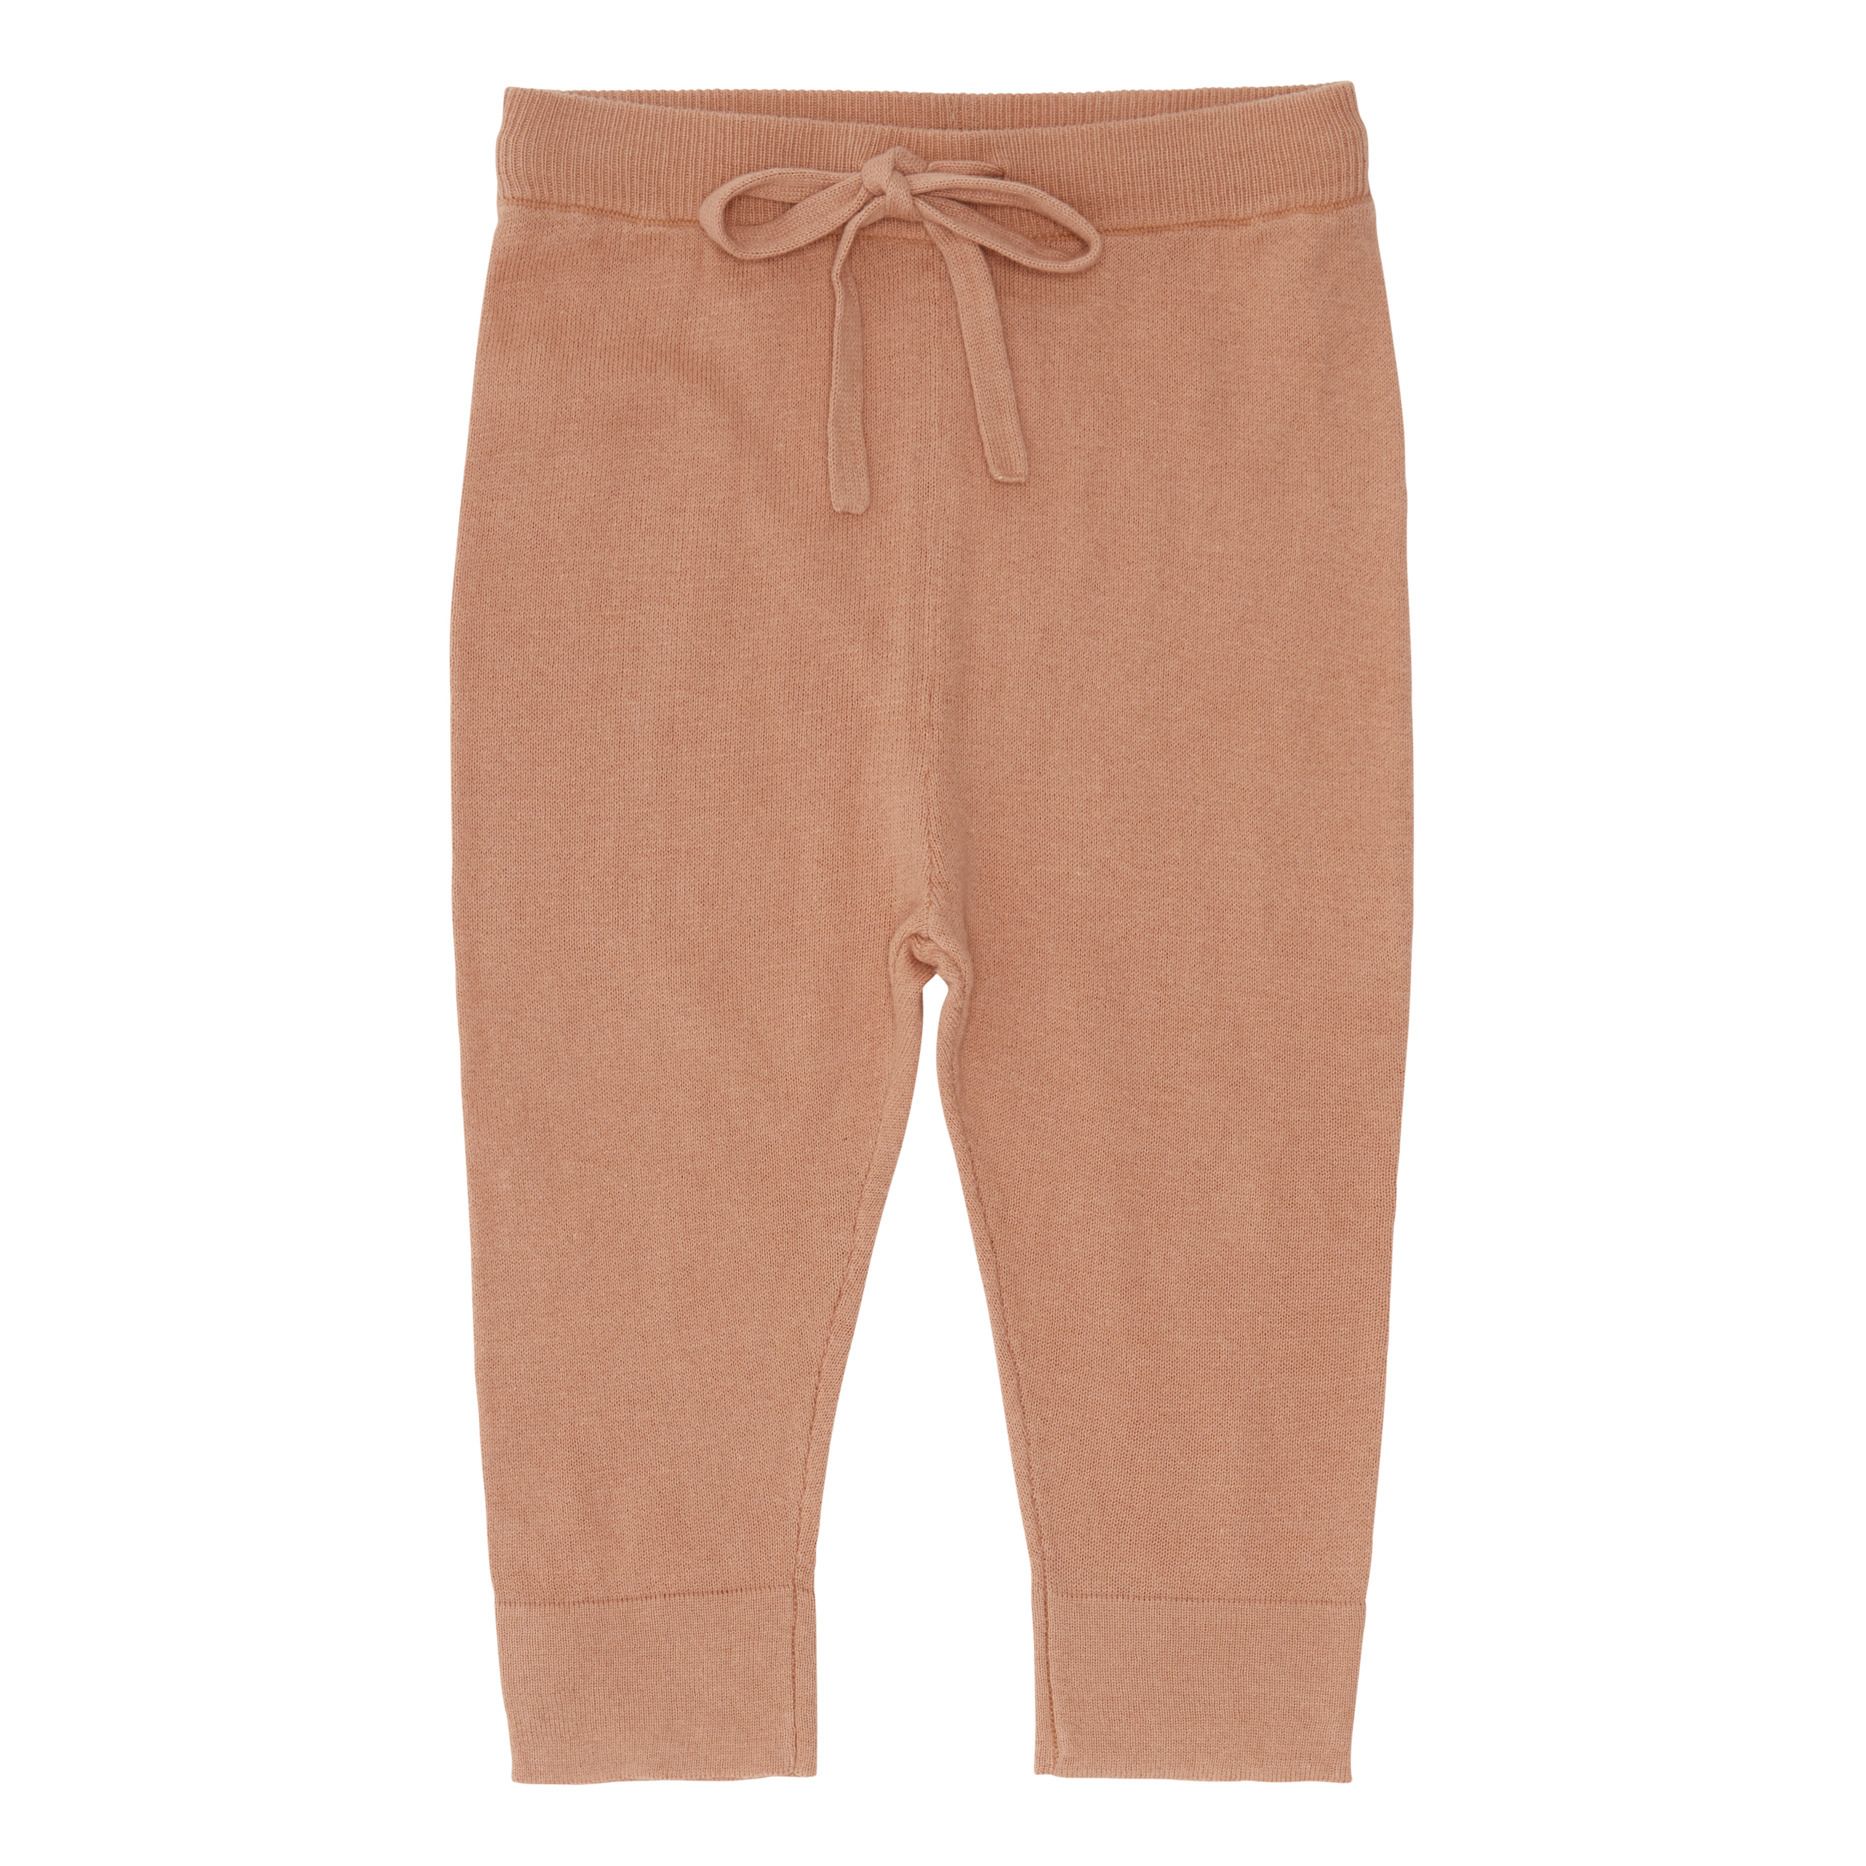 FUB - Pantalon Uni Coton Bio - Fille - Rose pâle